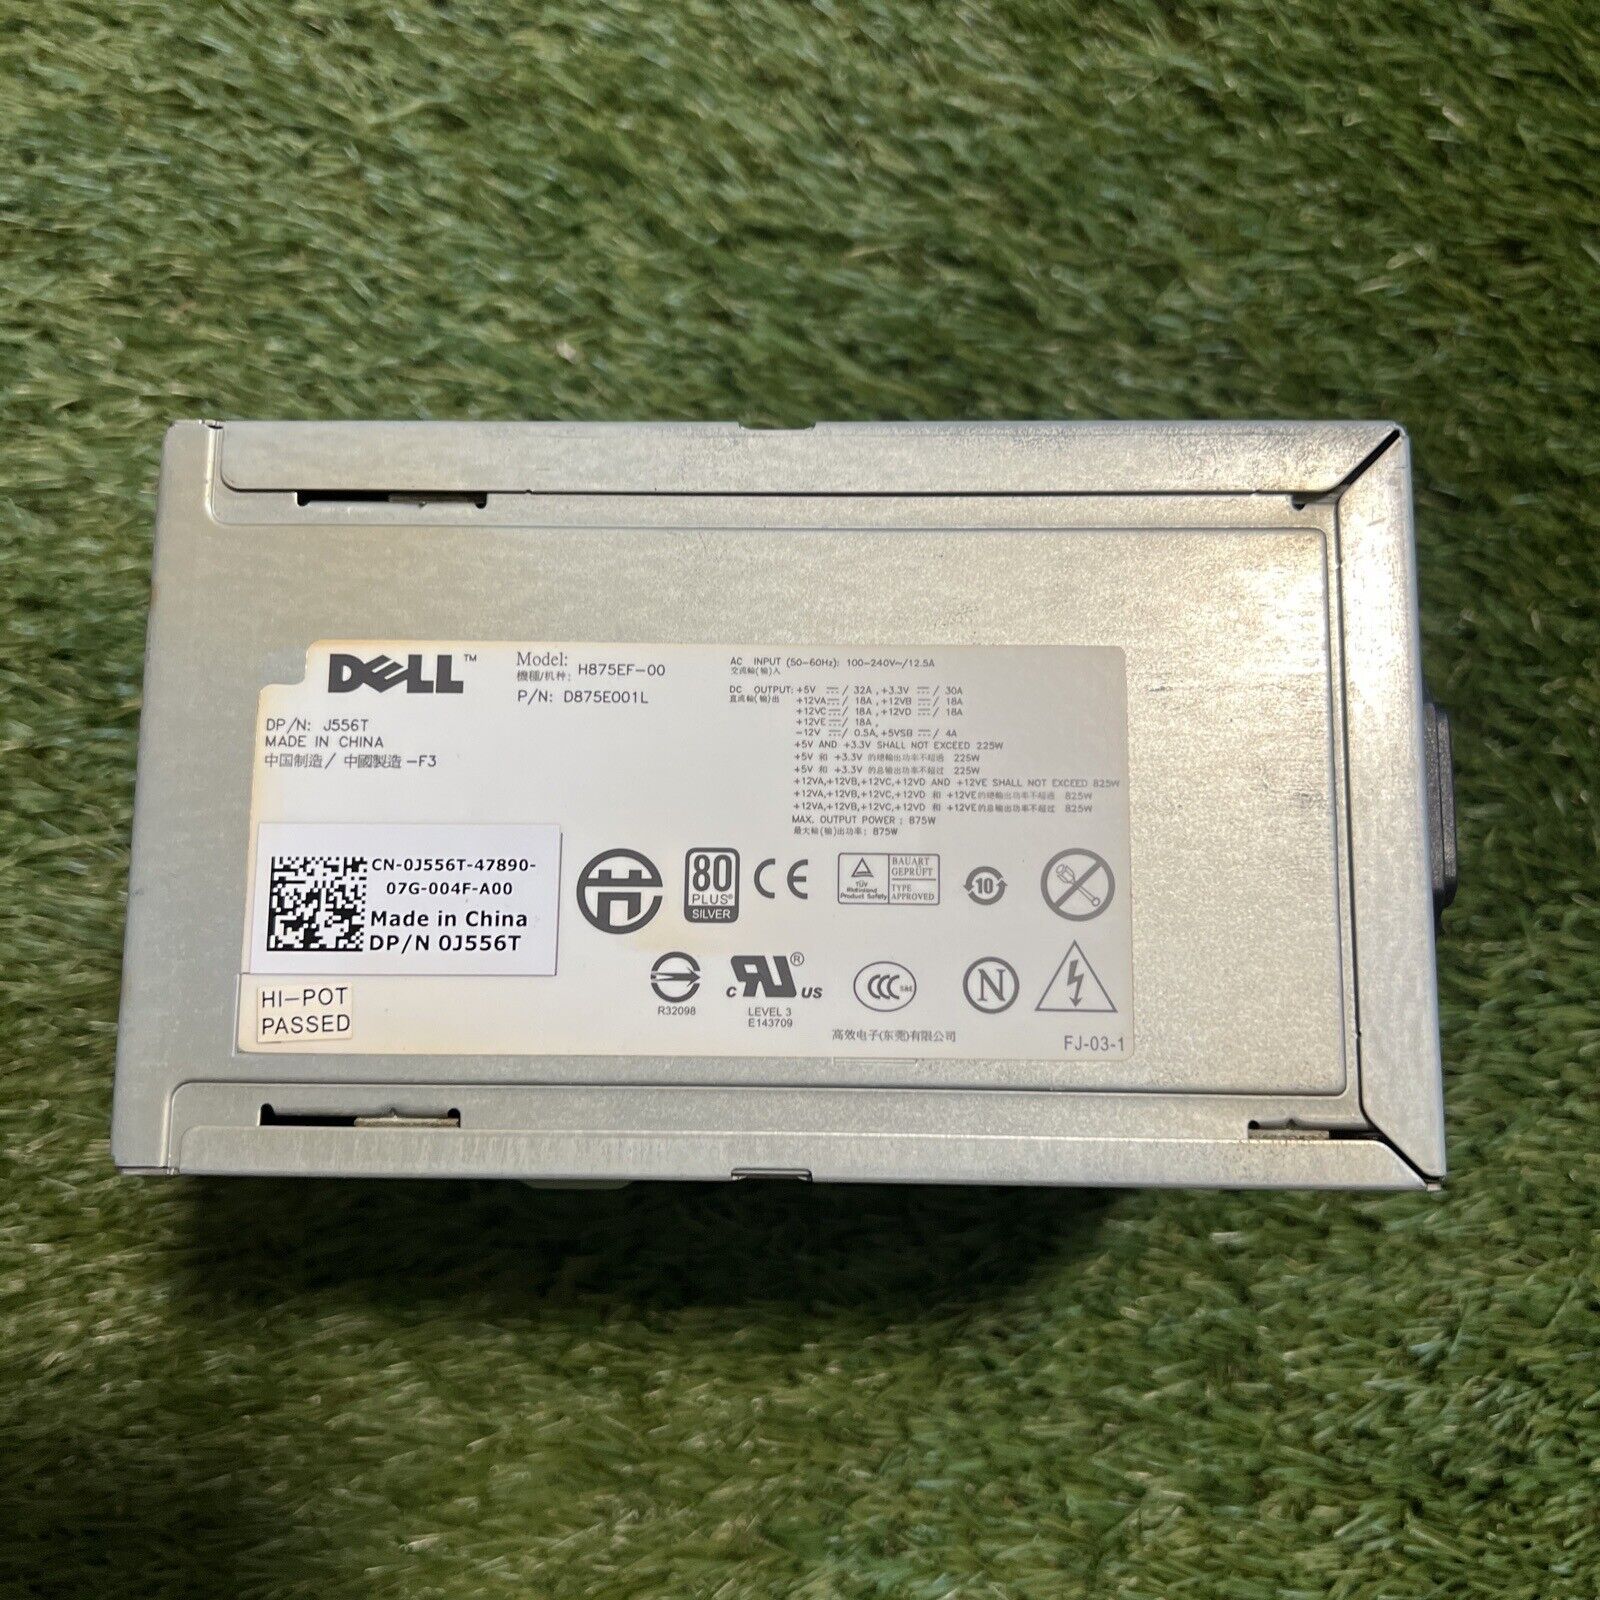 Dell Power Supply H875EF-00 875W 0J556T D875E001L